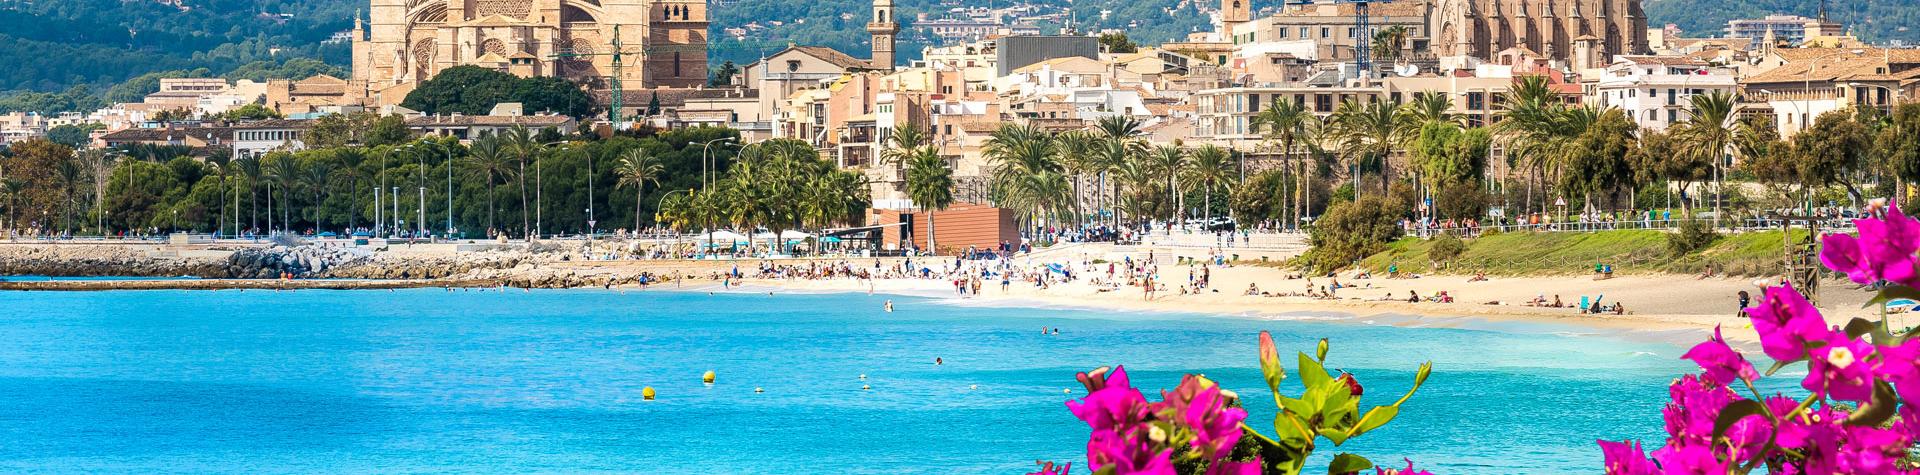 Palma, Mallorcas huvudstad.